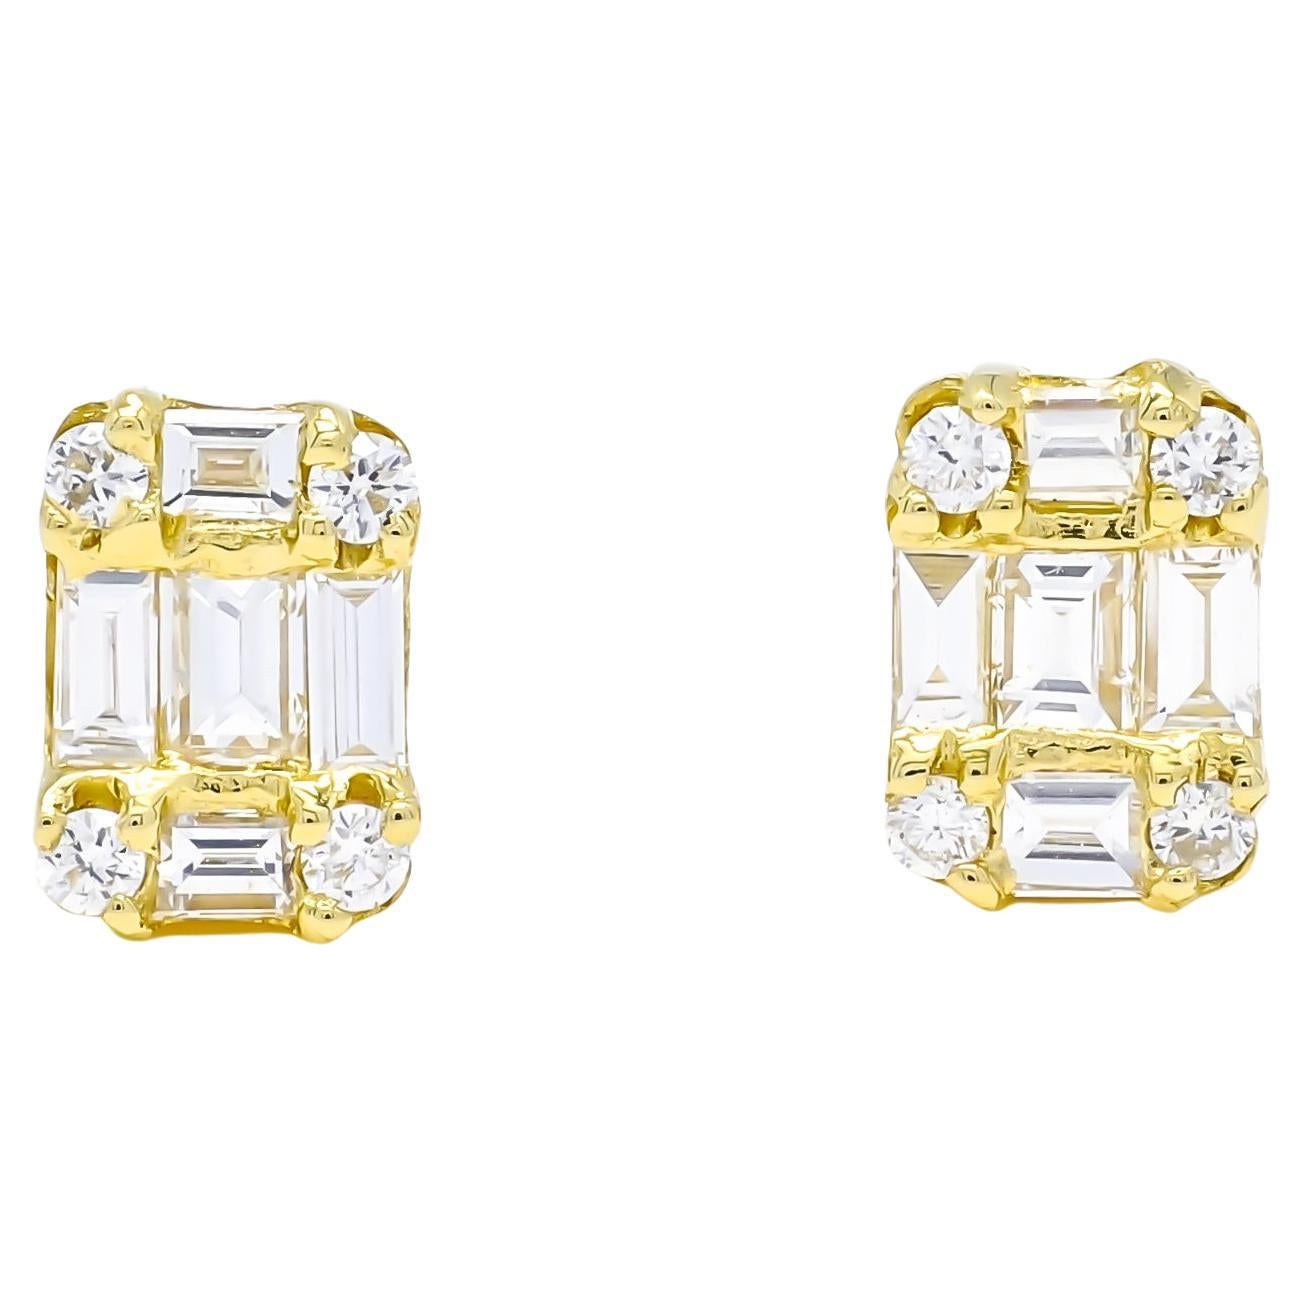 Baguette runde Diamanten Cluster einfache Ohrstecker sind ein vielseitiges Schmuckstück, das für eine Vielzahl von Anlässen getragen werden kann. Bei einer Hochzeit können diese Ohrringe jedem Brautlook einen eleganten Touch verleihen, ohne zu